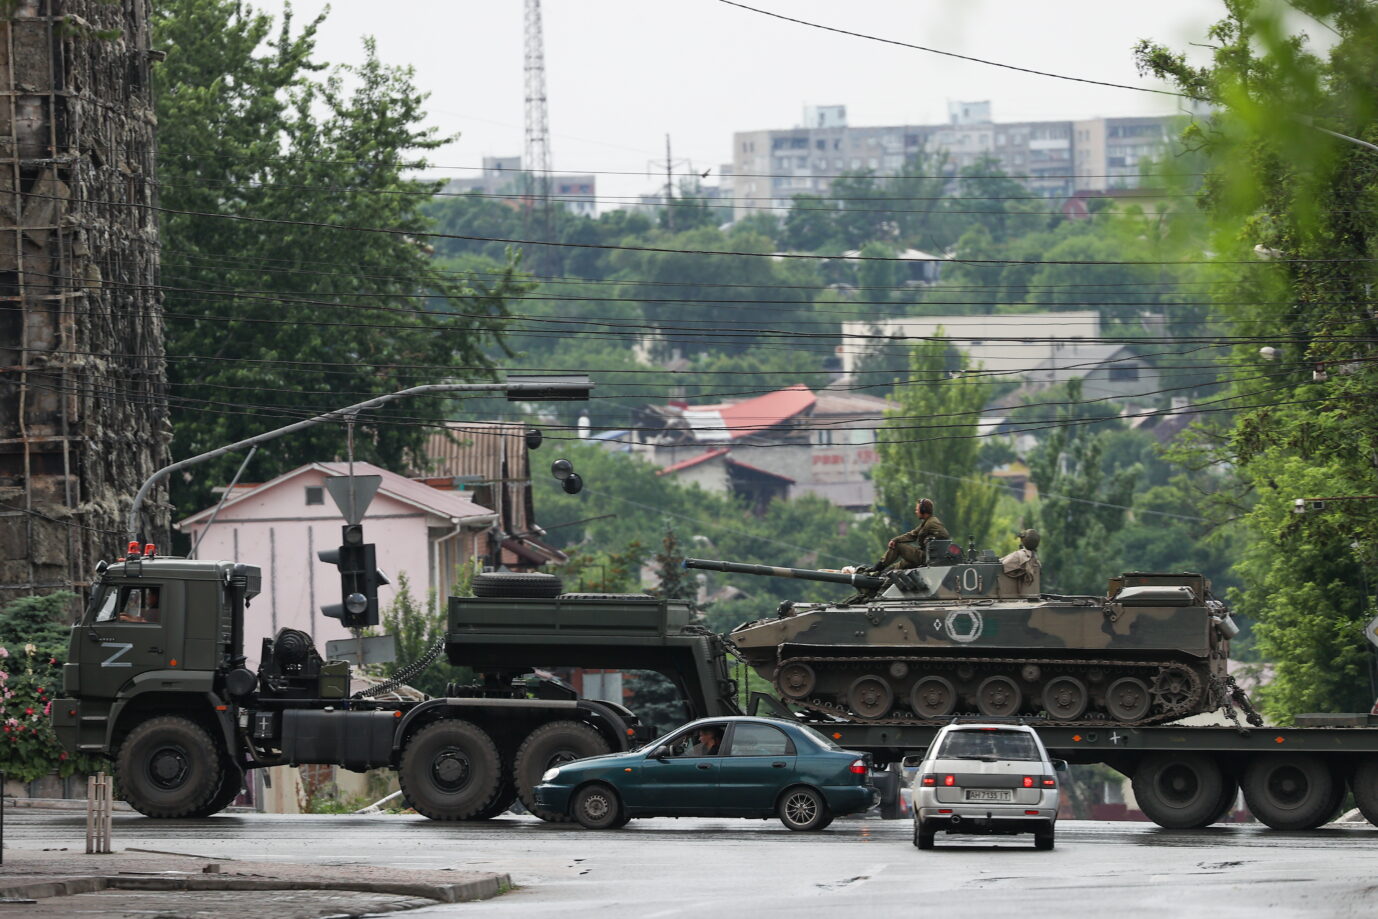 Russische Einheiten transportieren schweres Kriegsgerät durch die eroberte Stadt Mariupol im Osten der Ukraine Foto: picture alliance/dpa/TASS | Yegor Aleyev